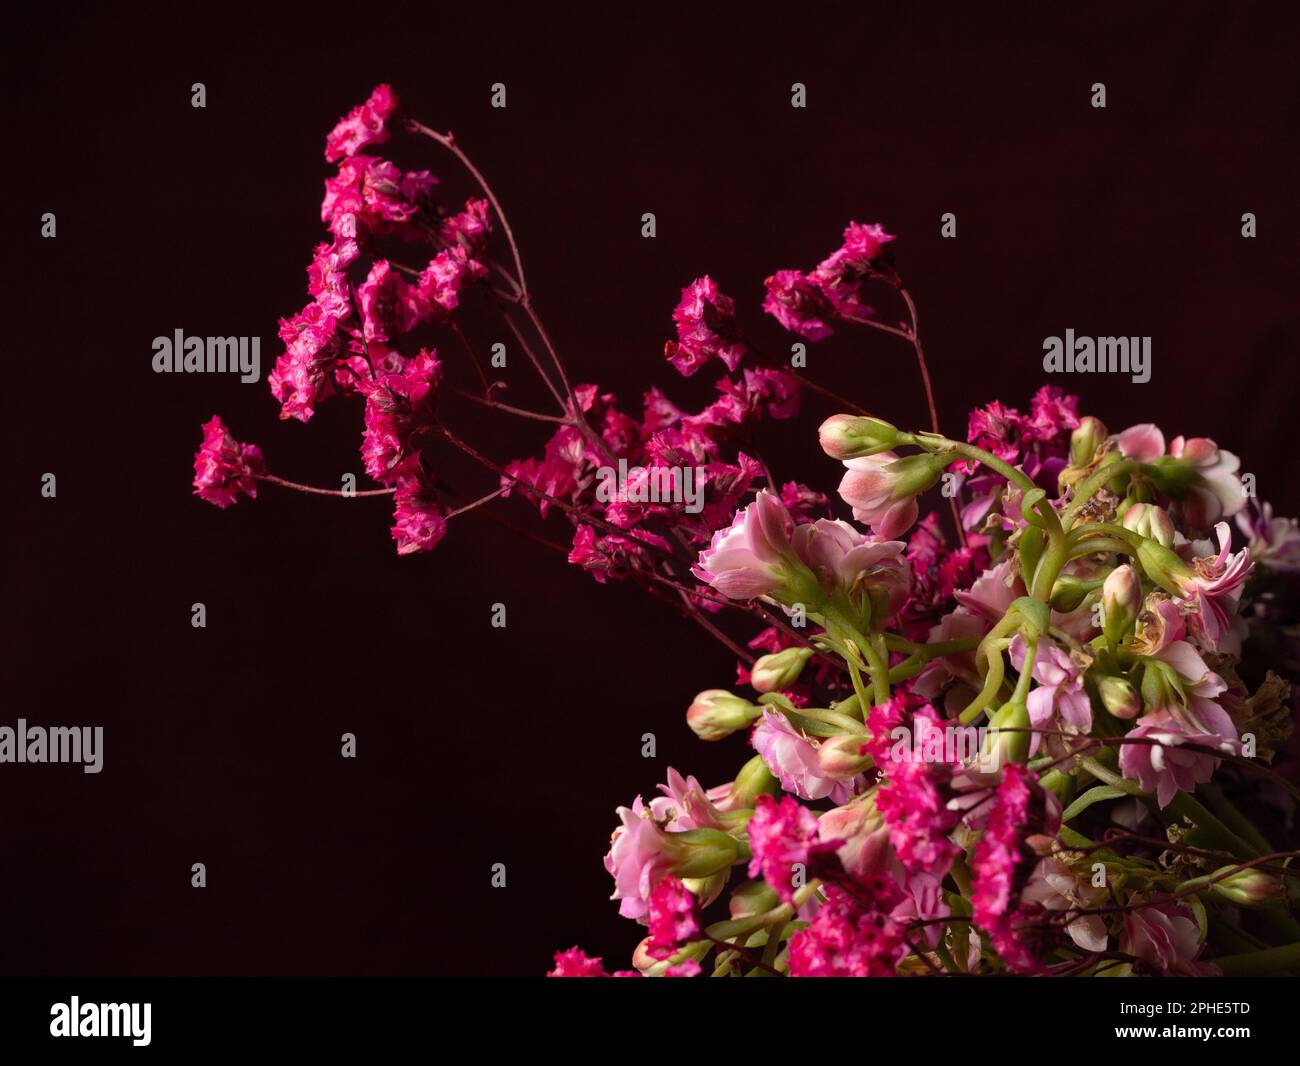 Vaso in ceramica con fiori riempito con una bella composizione di rose rosa e altre fiorite colorate, su uno sfondo scuro Foto Stock